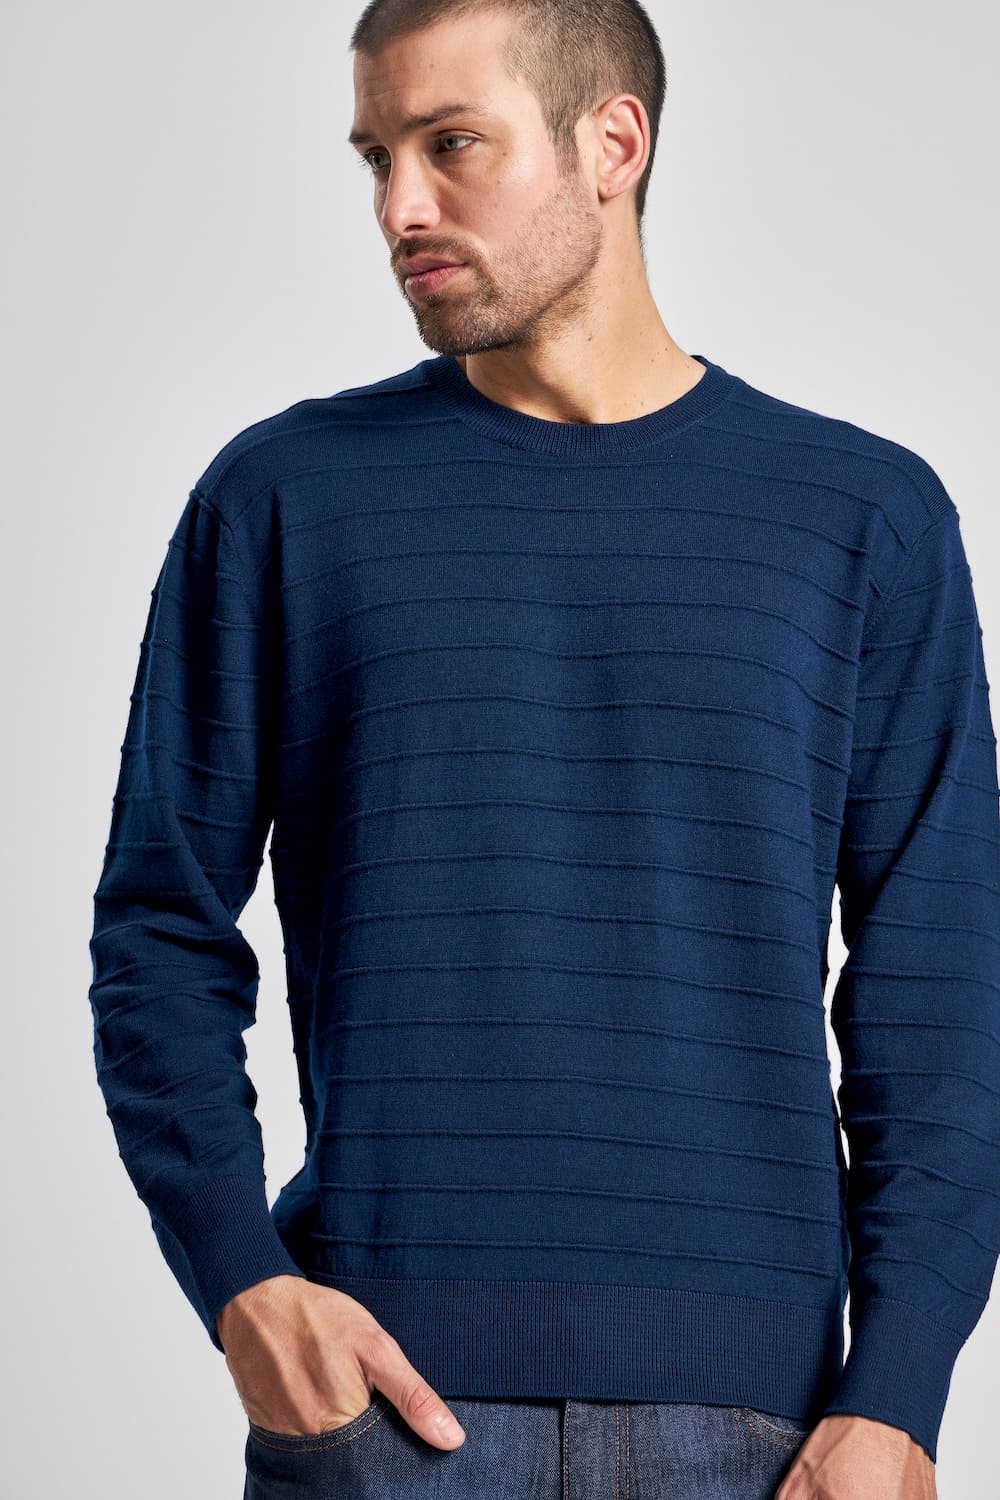 Sweater Merino Humano para Hombre - Koshkil